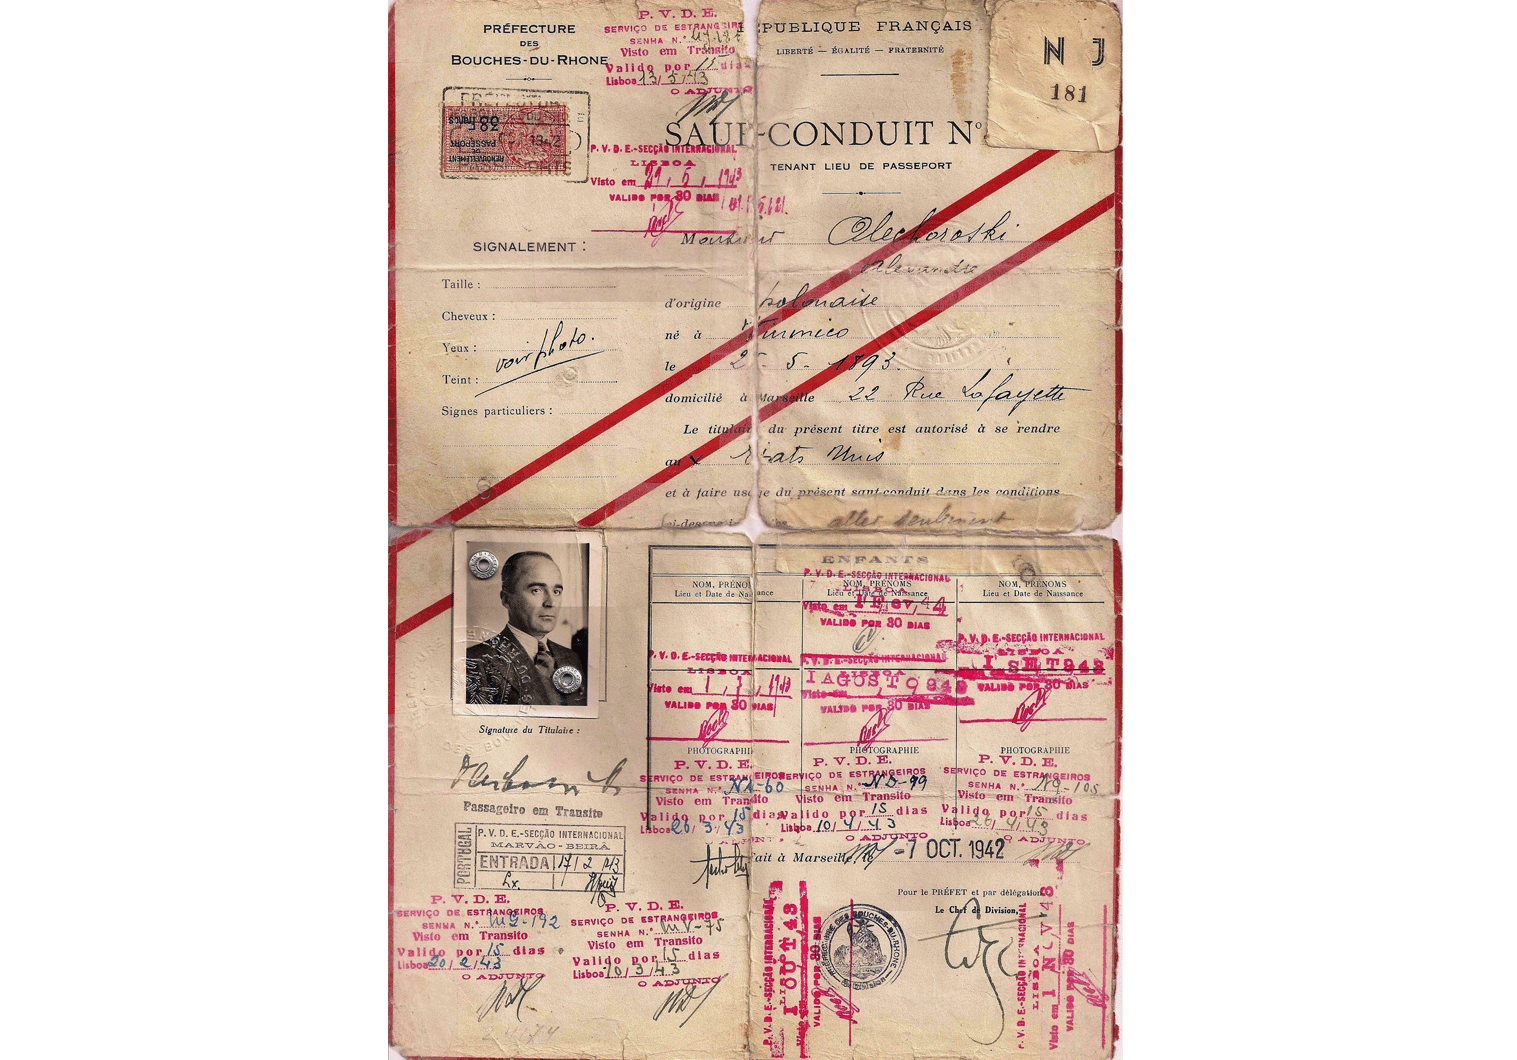 WW2 French travel document